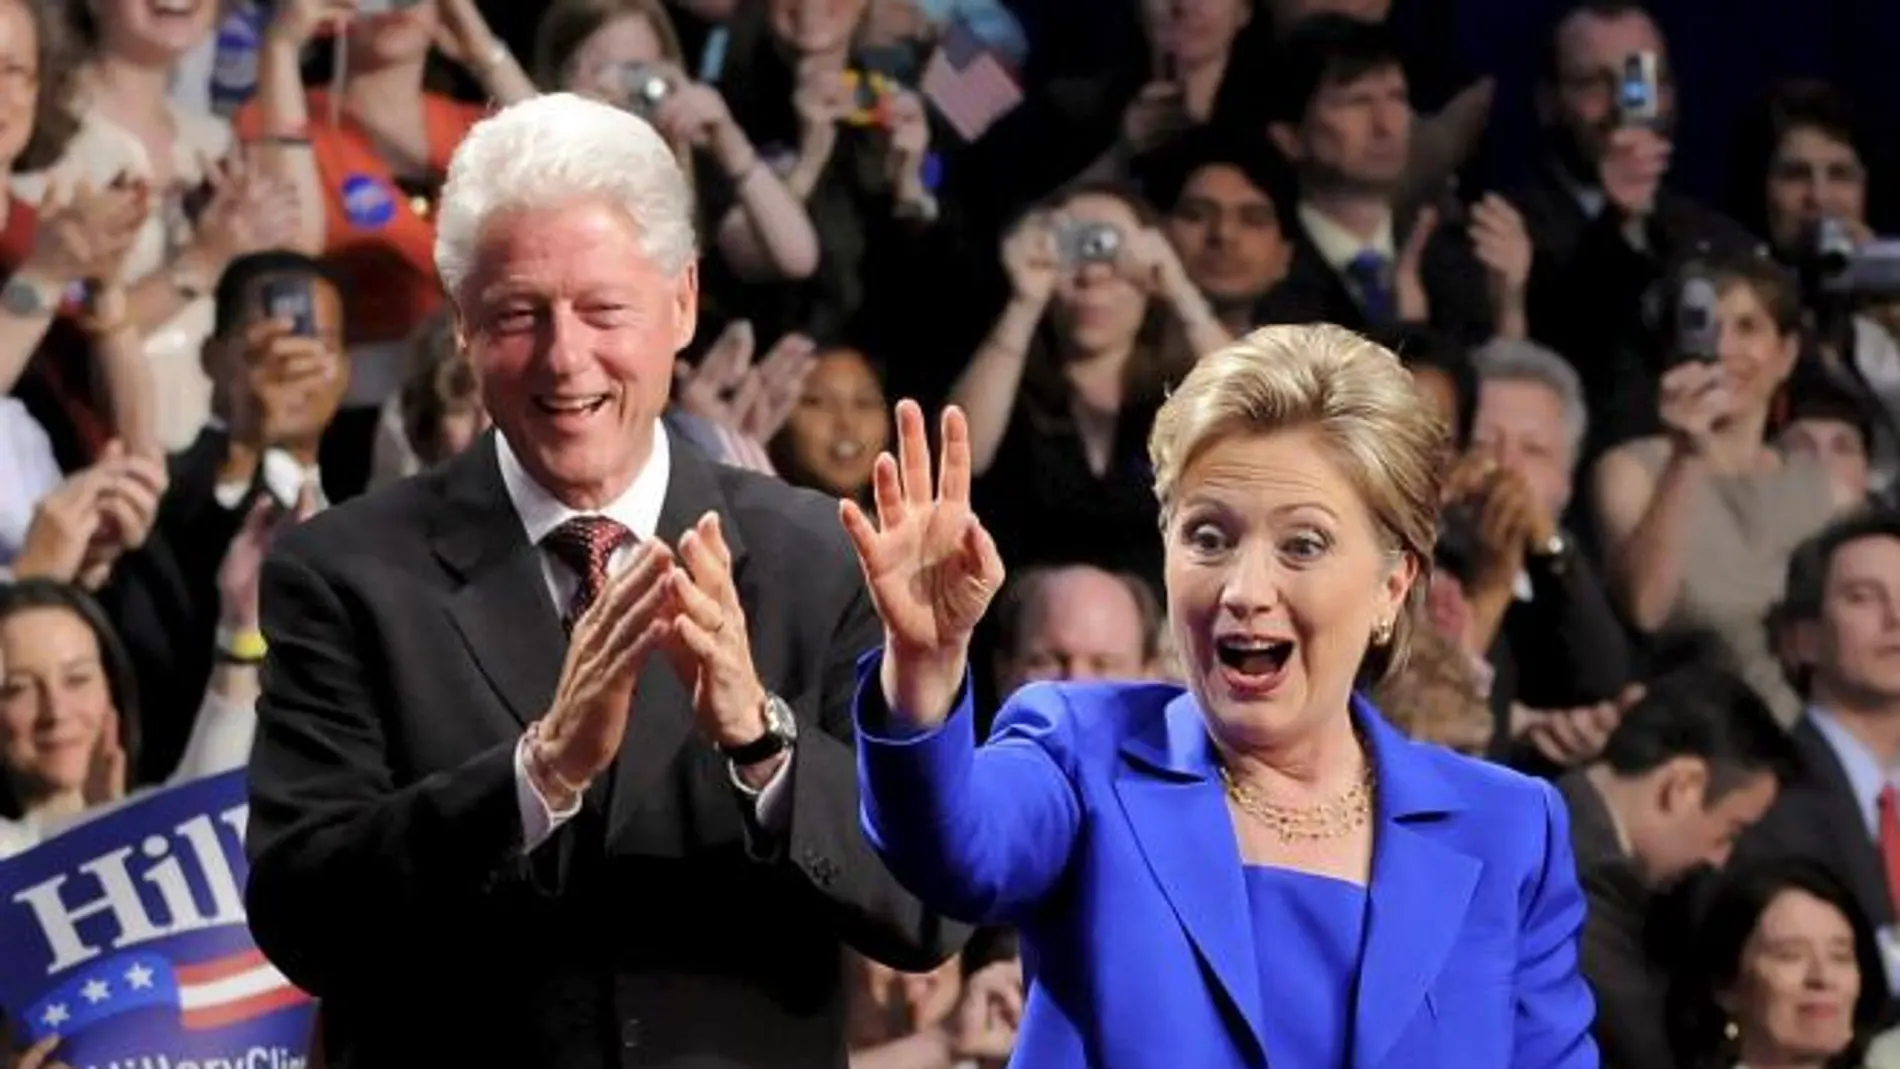 El matrimonio Clinton ha ingresado unos 128 millones de euros en los últimos ocho años